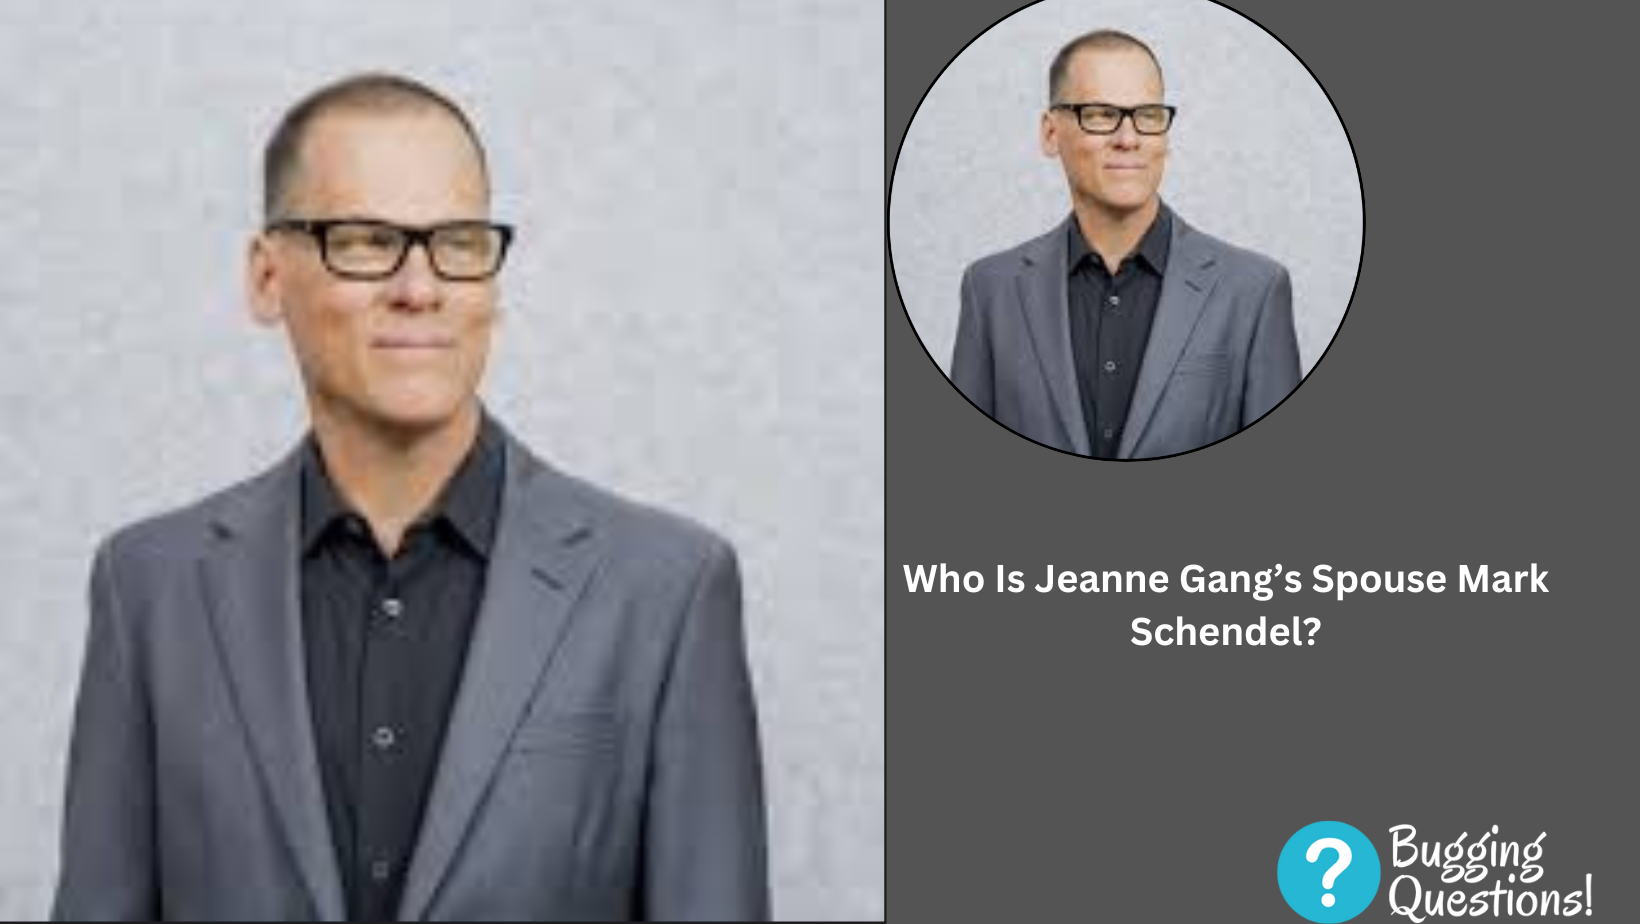 Who Is Jeanne Gang’s Spouse Mark Schendel?